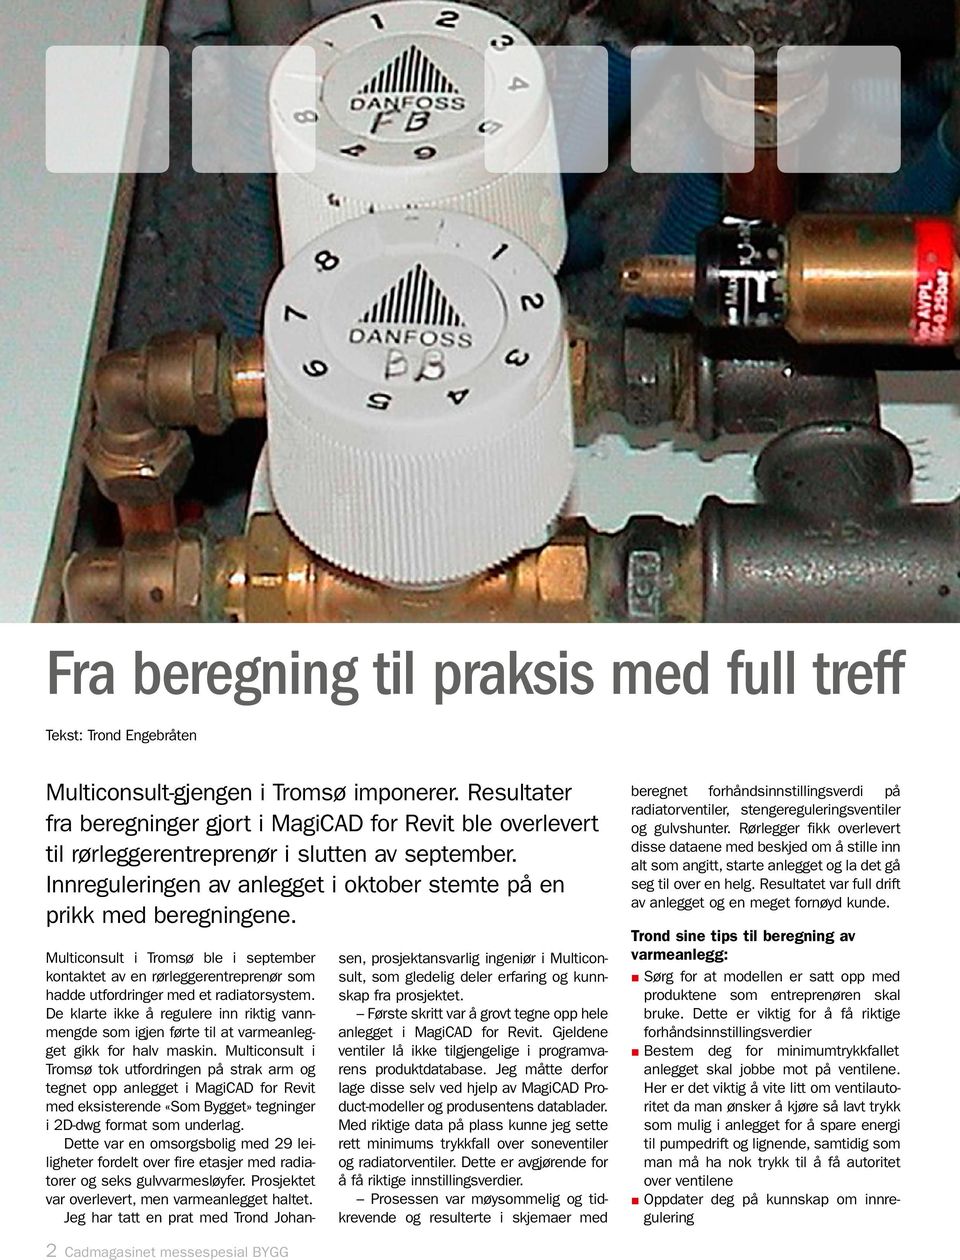 Multiconsult i Tromsø ble i september kontaktet av en rørleggerentreprenør som hadde utfordringer med et radiatorsystem.